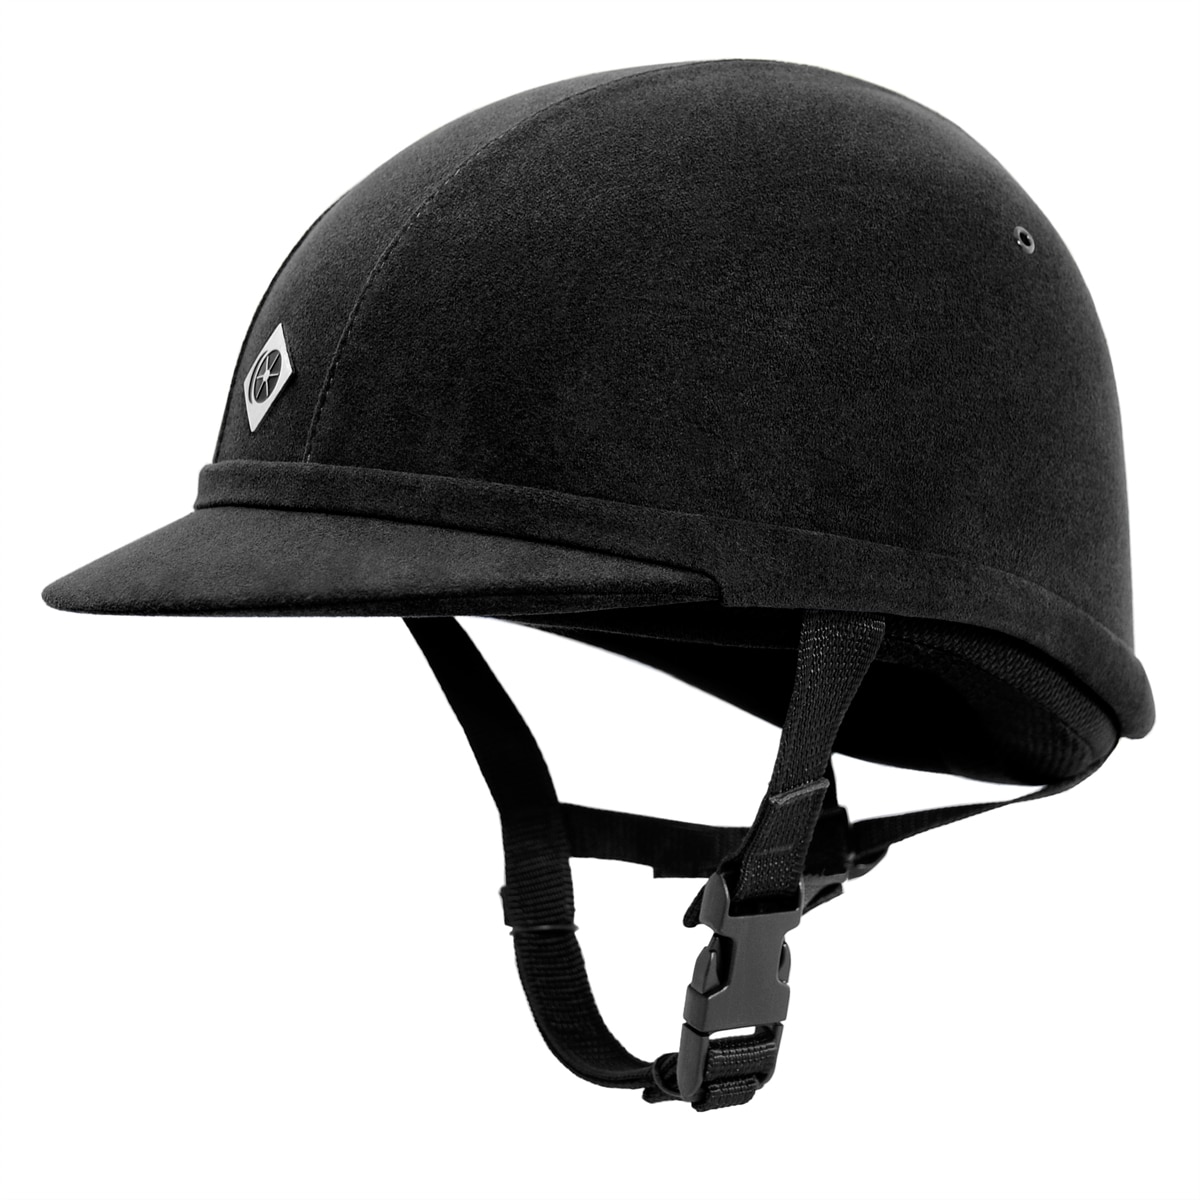 Charles Owen JR8 Helmet 